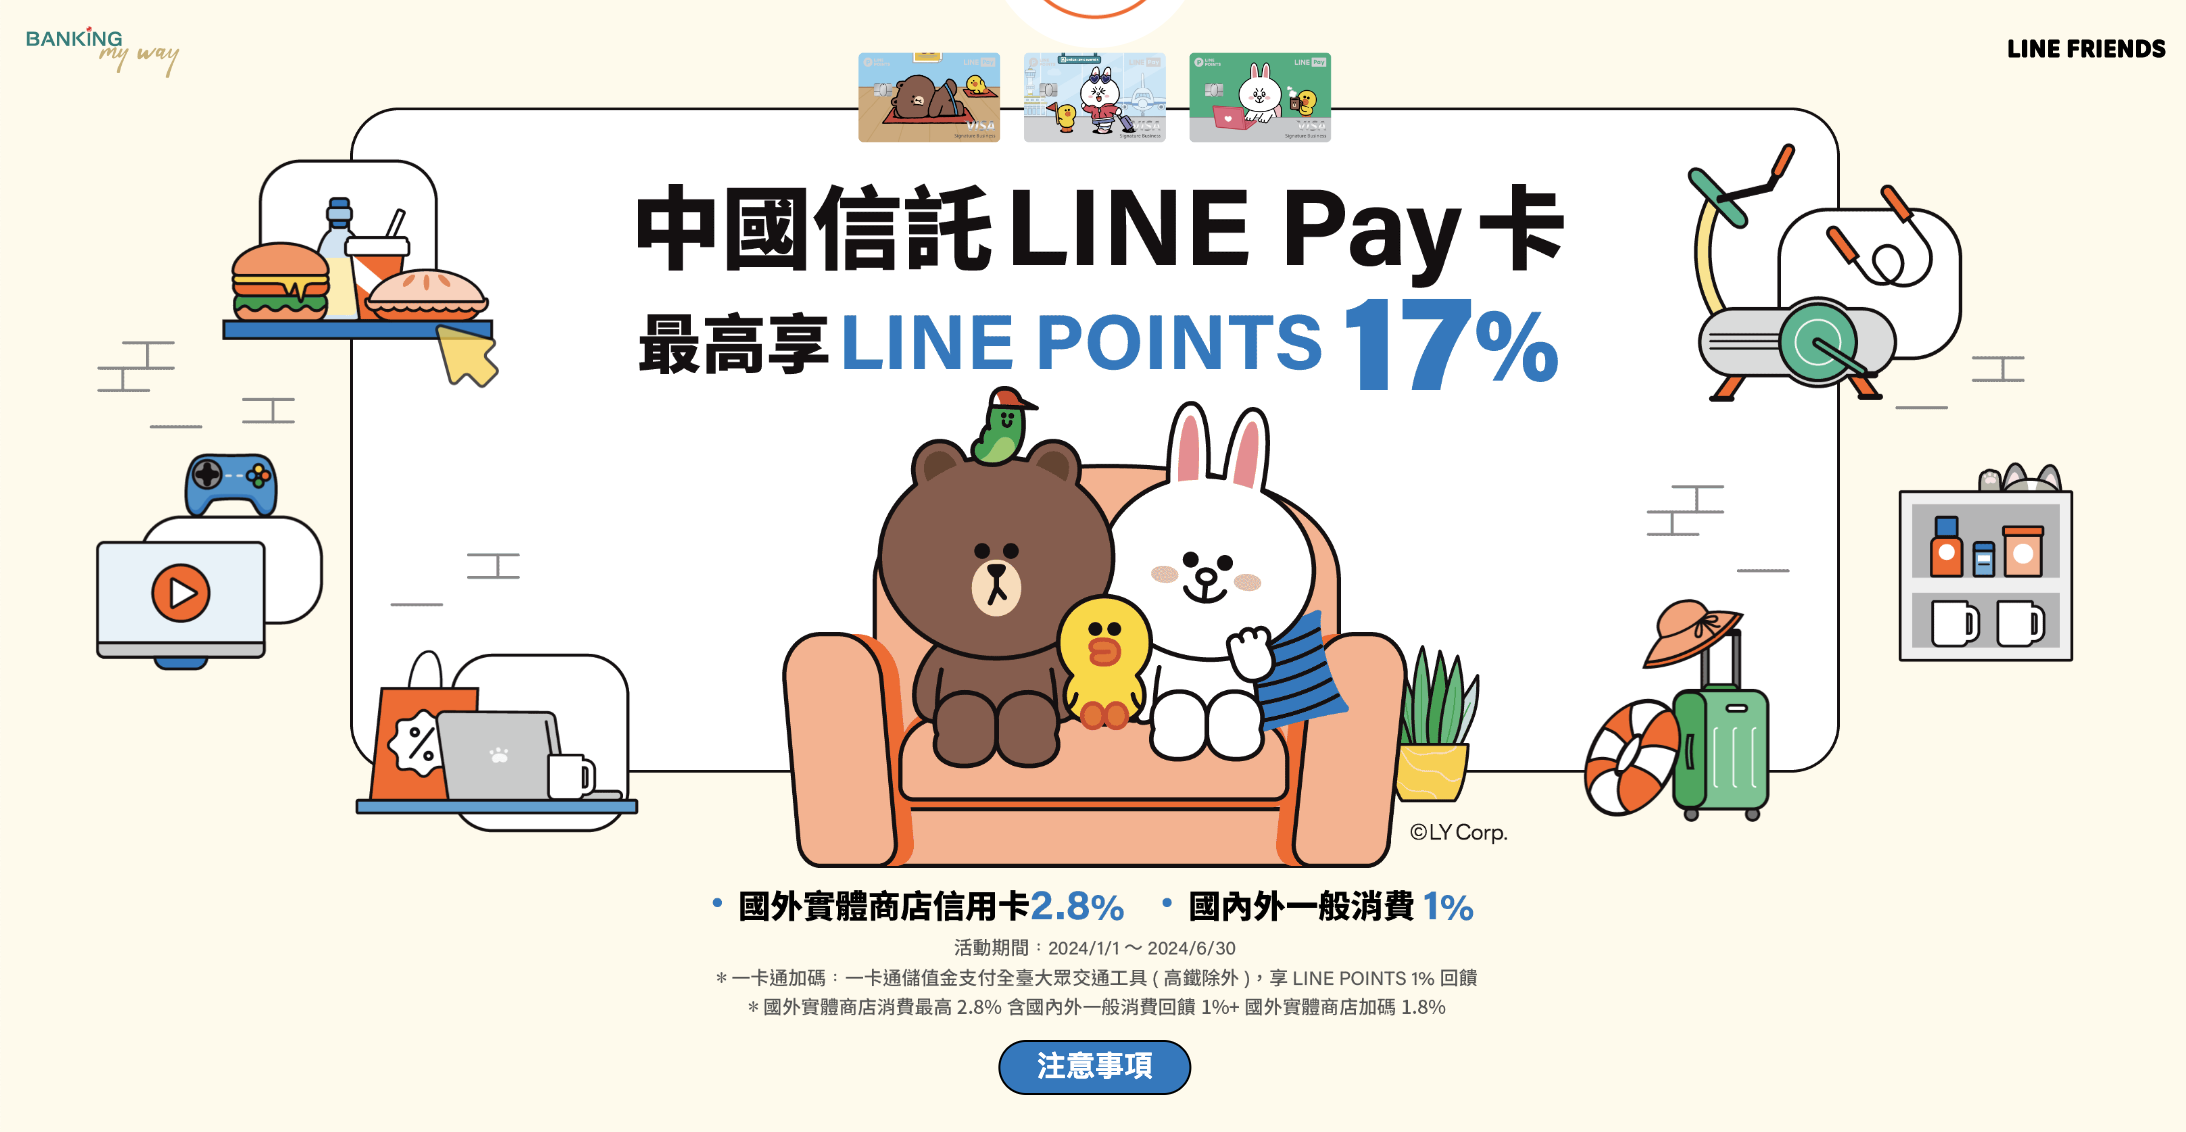 中國信託LINE Pay卡